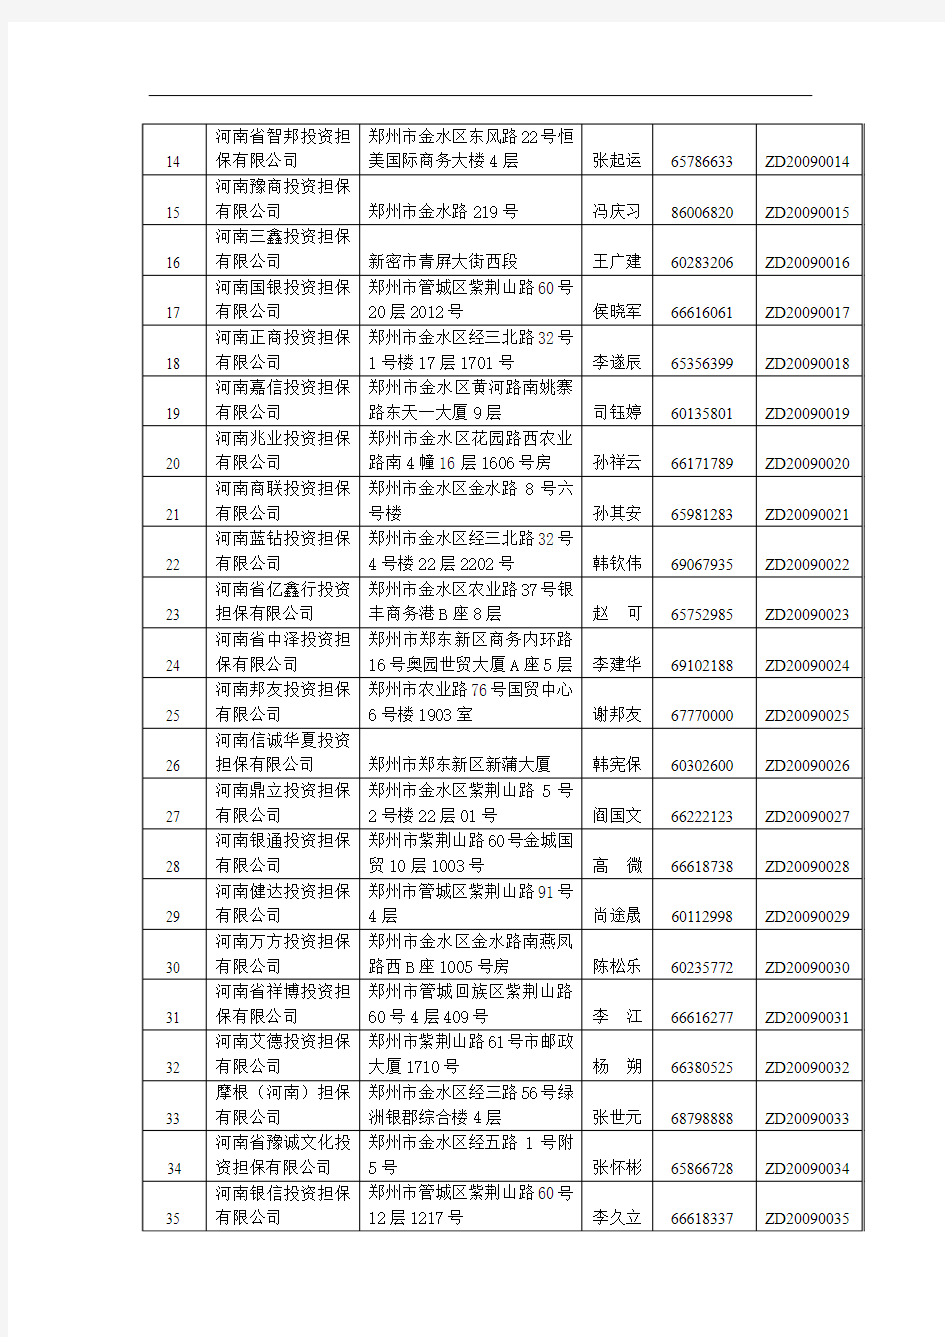 郑州信用担保机构登记备案公示截止2010年12月31日共264家